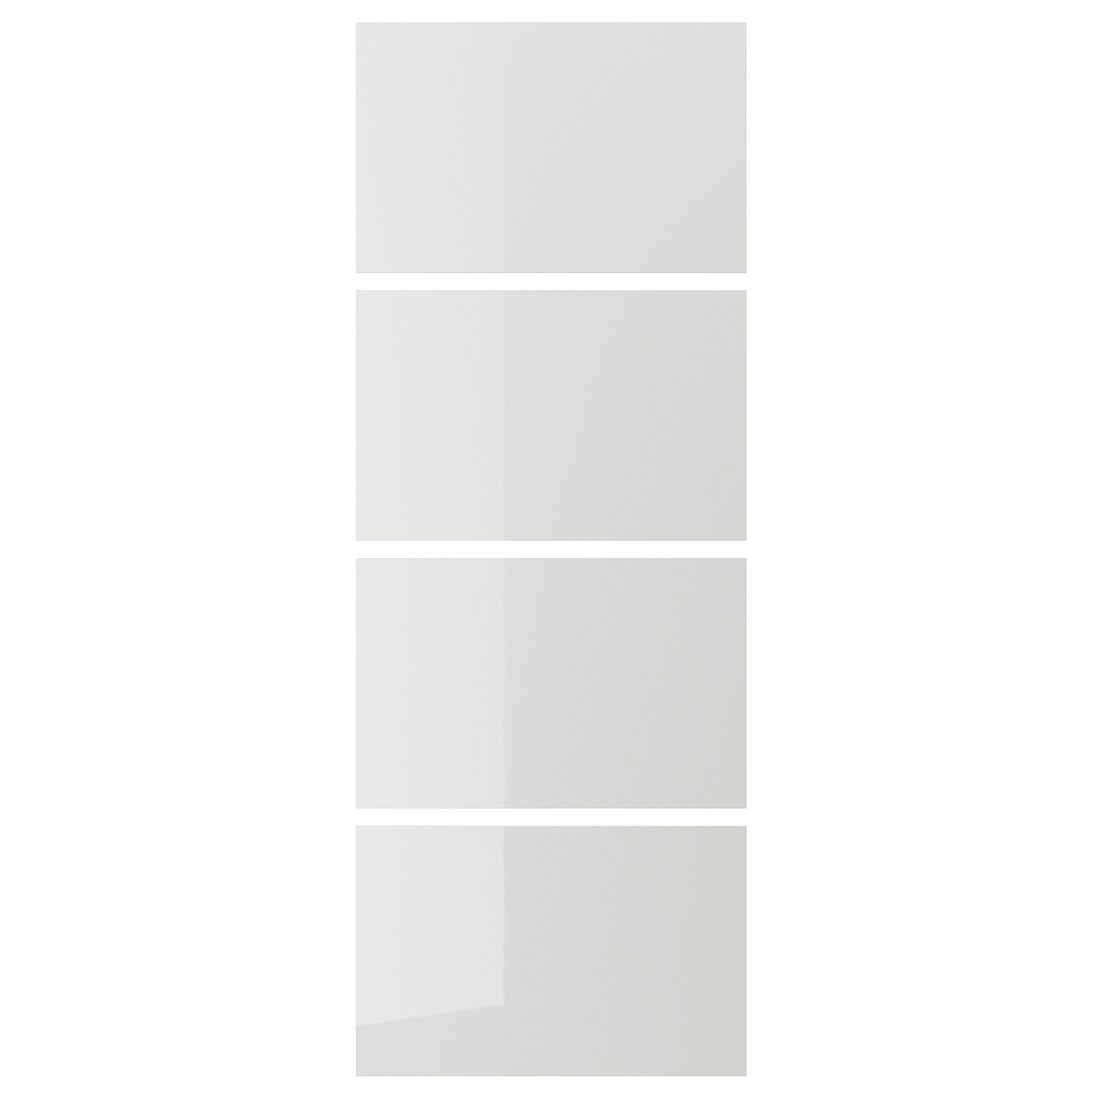 HOKKSUND ХОККСУНД 4 панелі для рами розсувних дверей, глянцевий світло-сірий, 75x201 cм